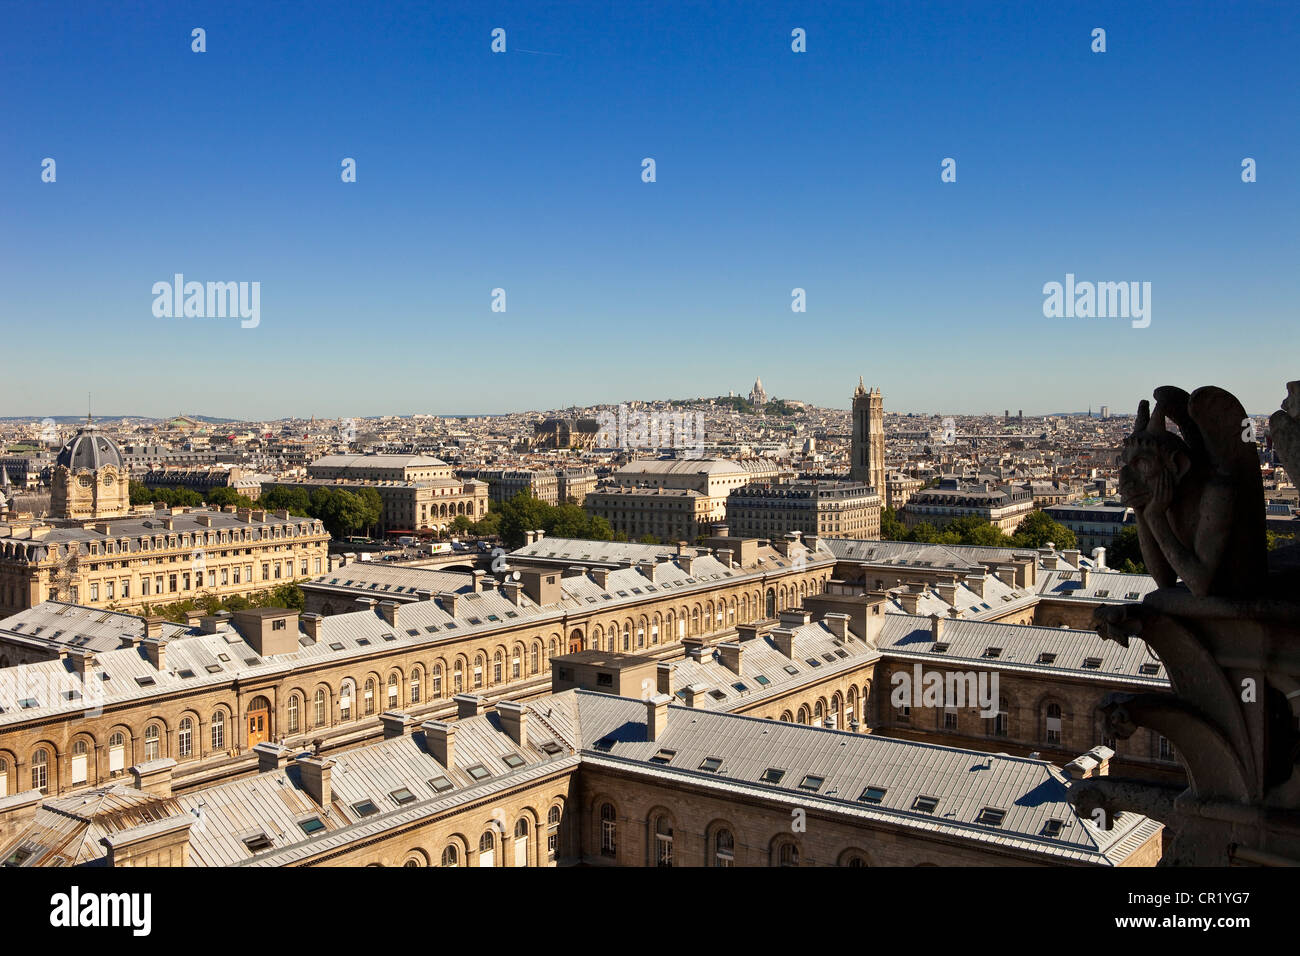 France, Paris, vue générale de la cathédrale Notre-Dame de Paris Banque D'Images